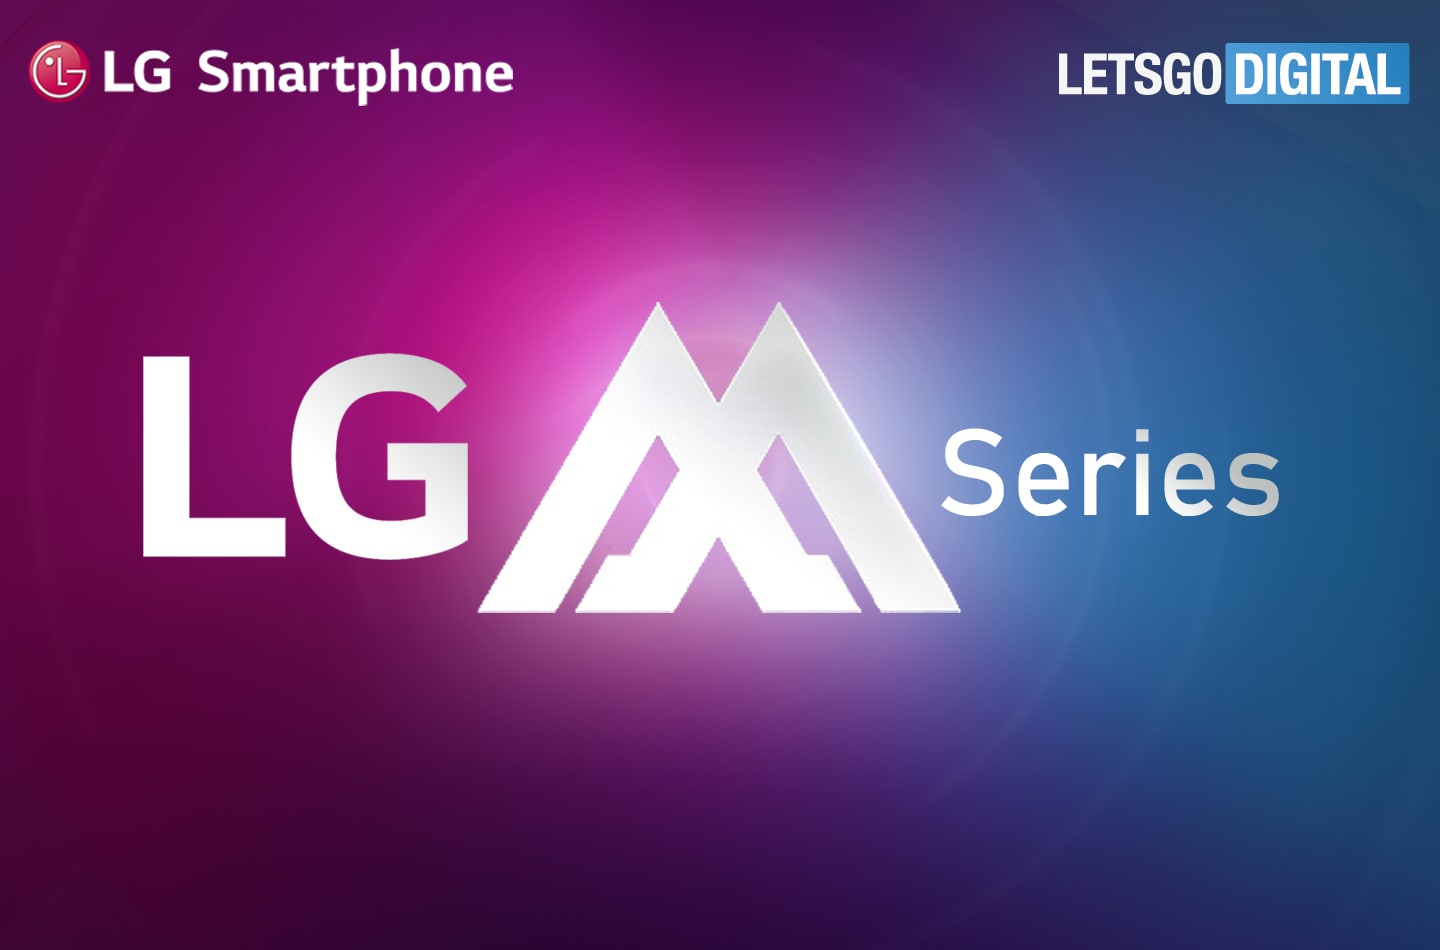 LG pronta ad inaugurare la nuova serie M e spuntano nuove conferme per l'arrivo di V60 e V70 (foto)